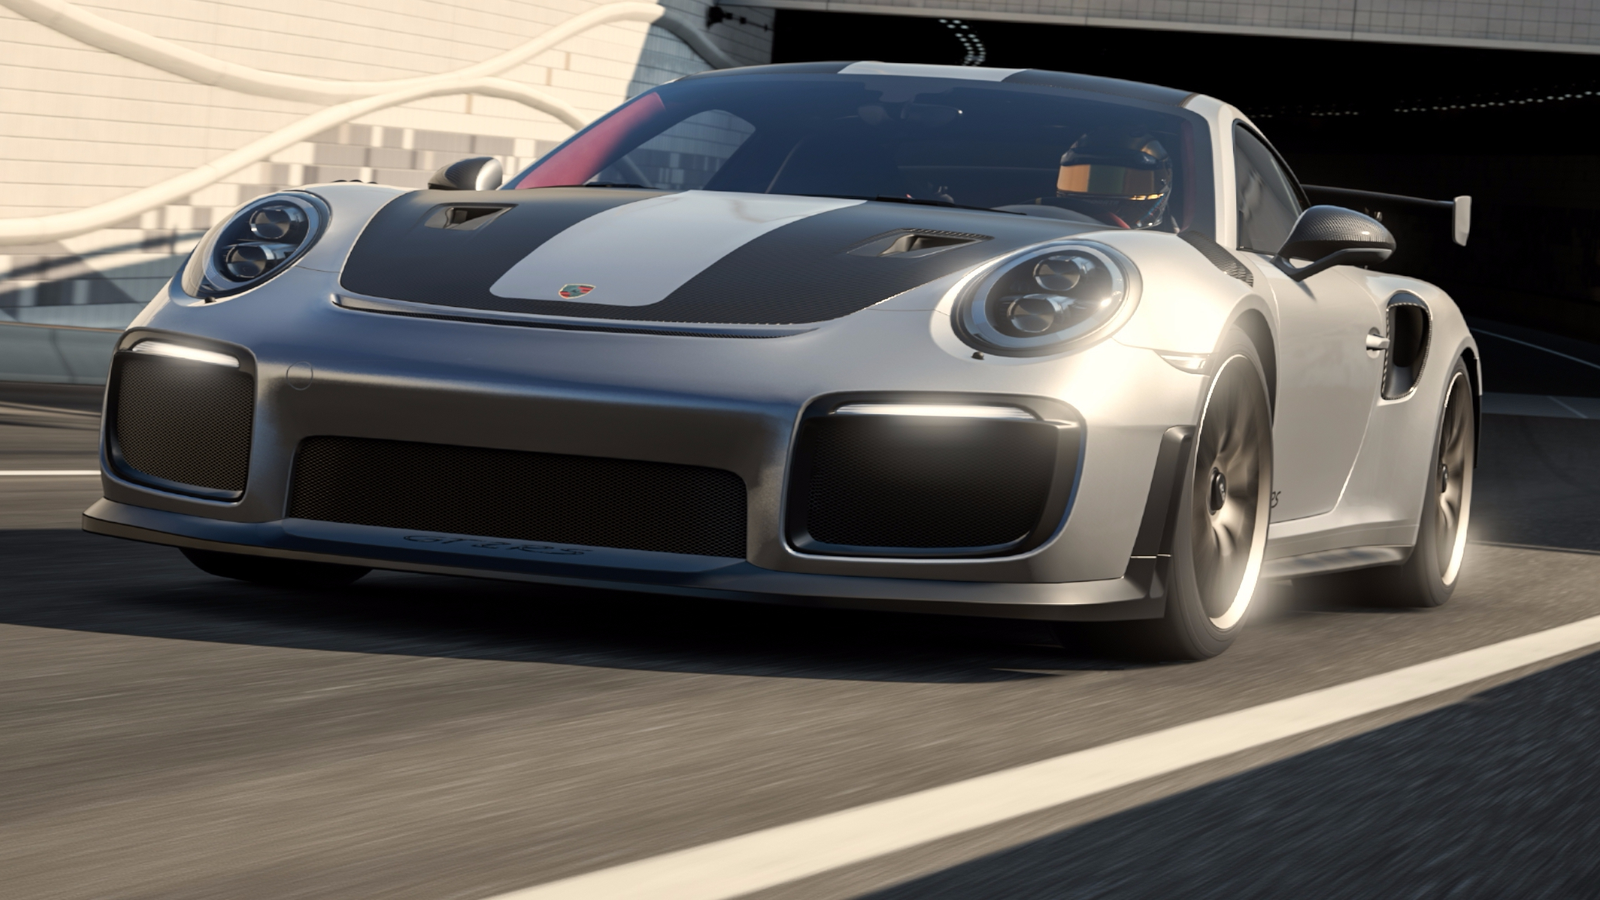 Forza Motorsport revela especificações para o PC e inicia pré-venda digital